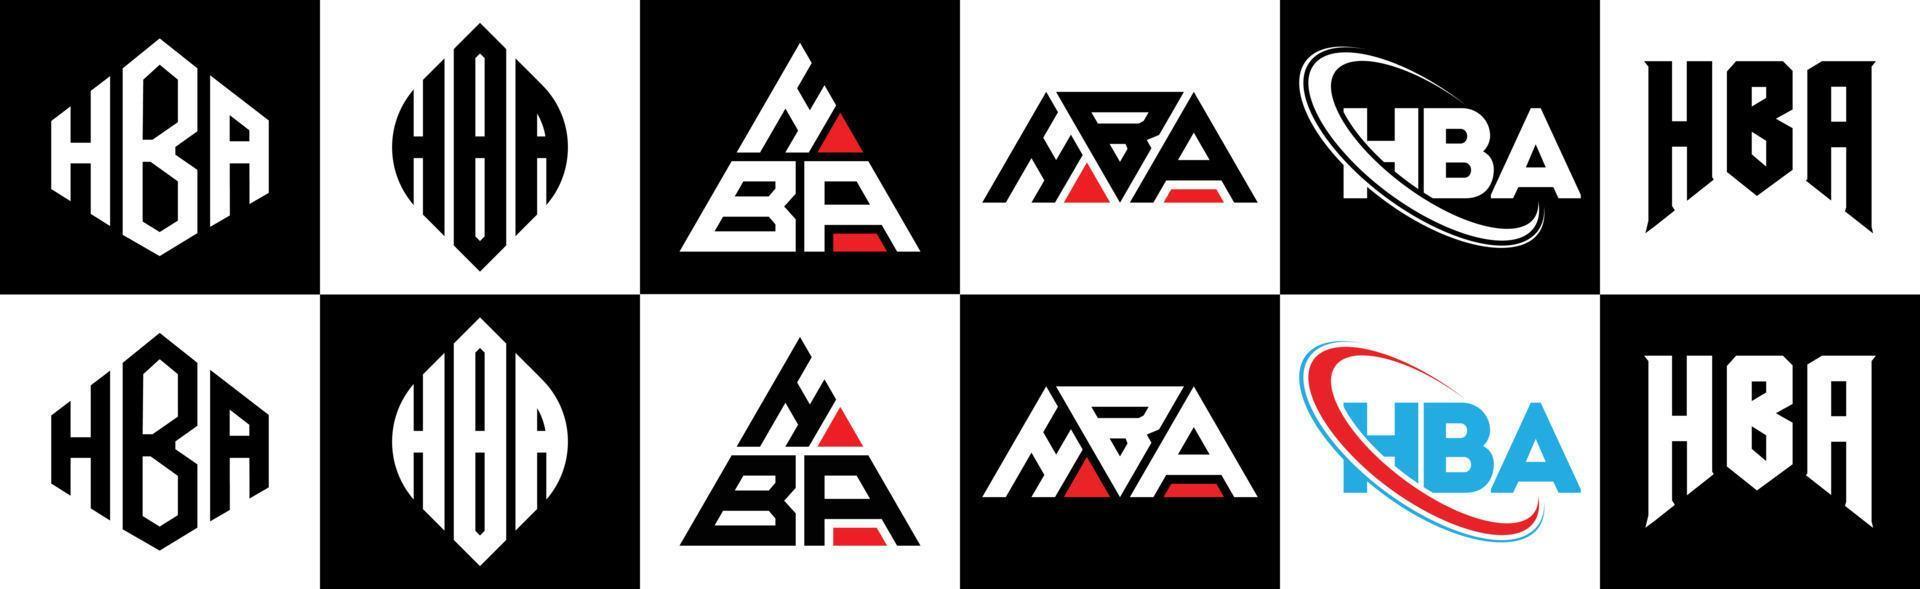 HBA-Brief-Logo-Design in sechs Stilen. HBA-Polygon, Kreis, Dreieck, Sechseck, flacher und einfacher Stil mit schwarz-weißem Buchstabenlogo in einer Zeichenfläche. HBA minimalistisches und klassisches Logo vektor